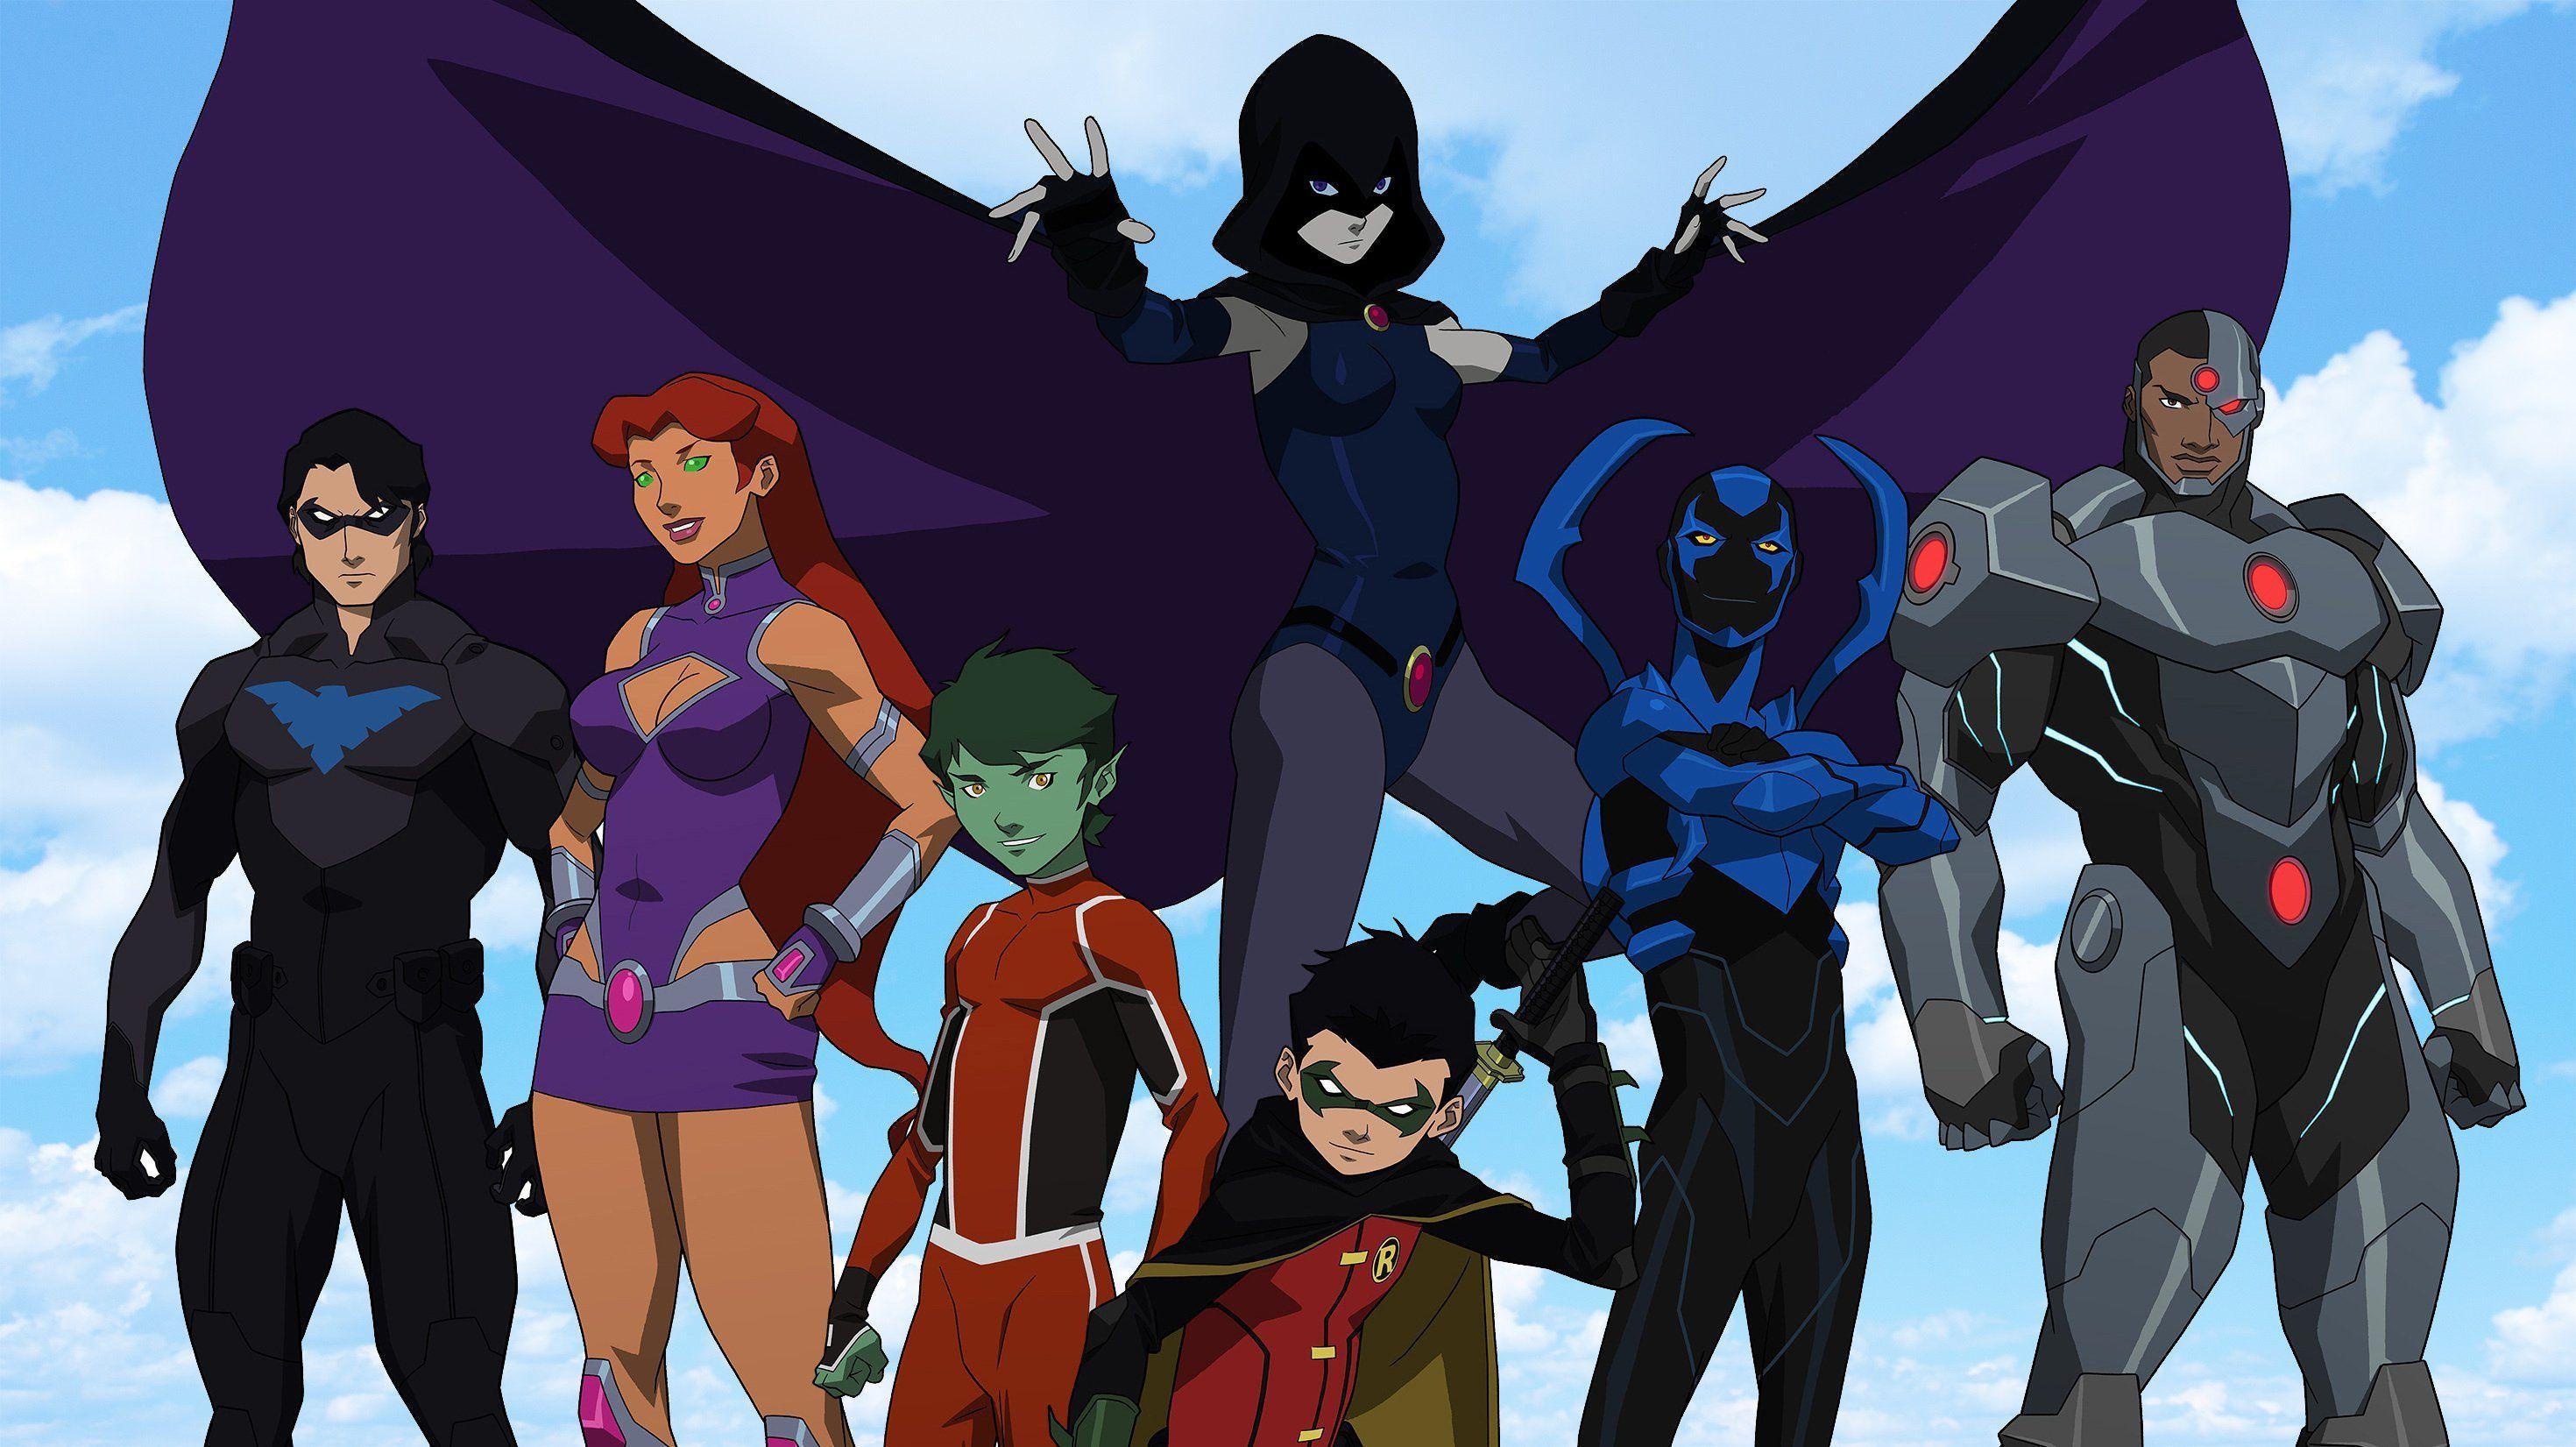 Raven DC Comic FanArt 2020 4K HD Superheroes Wallpapers  HD Wallpapers   ID 45815